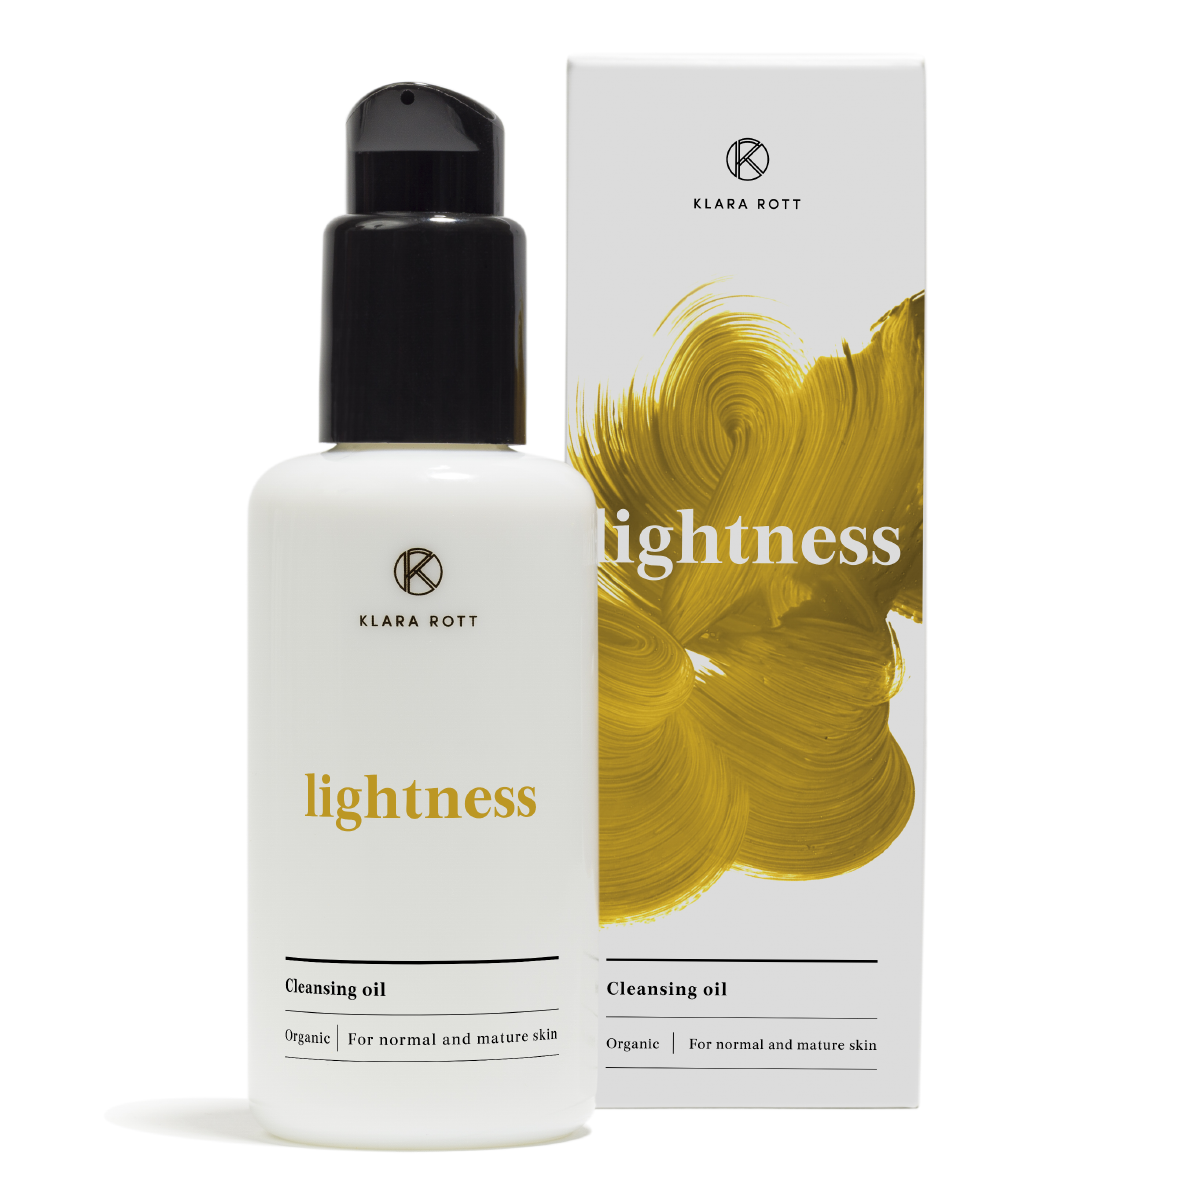 Lightness - Nourishing cleansing oil 